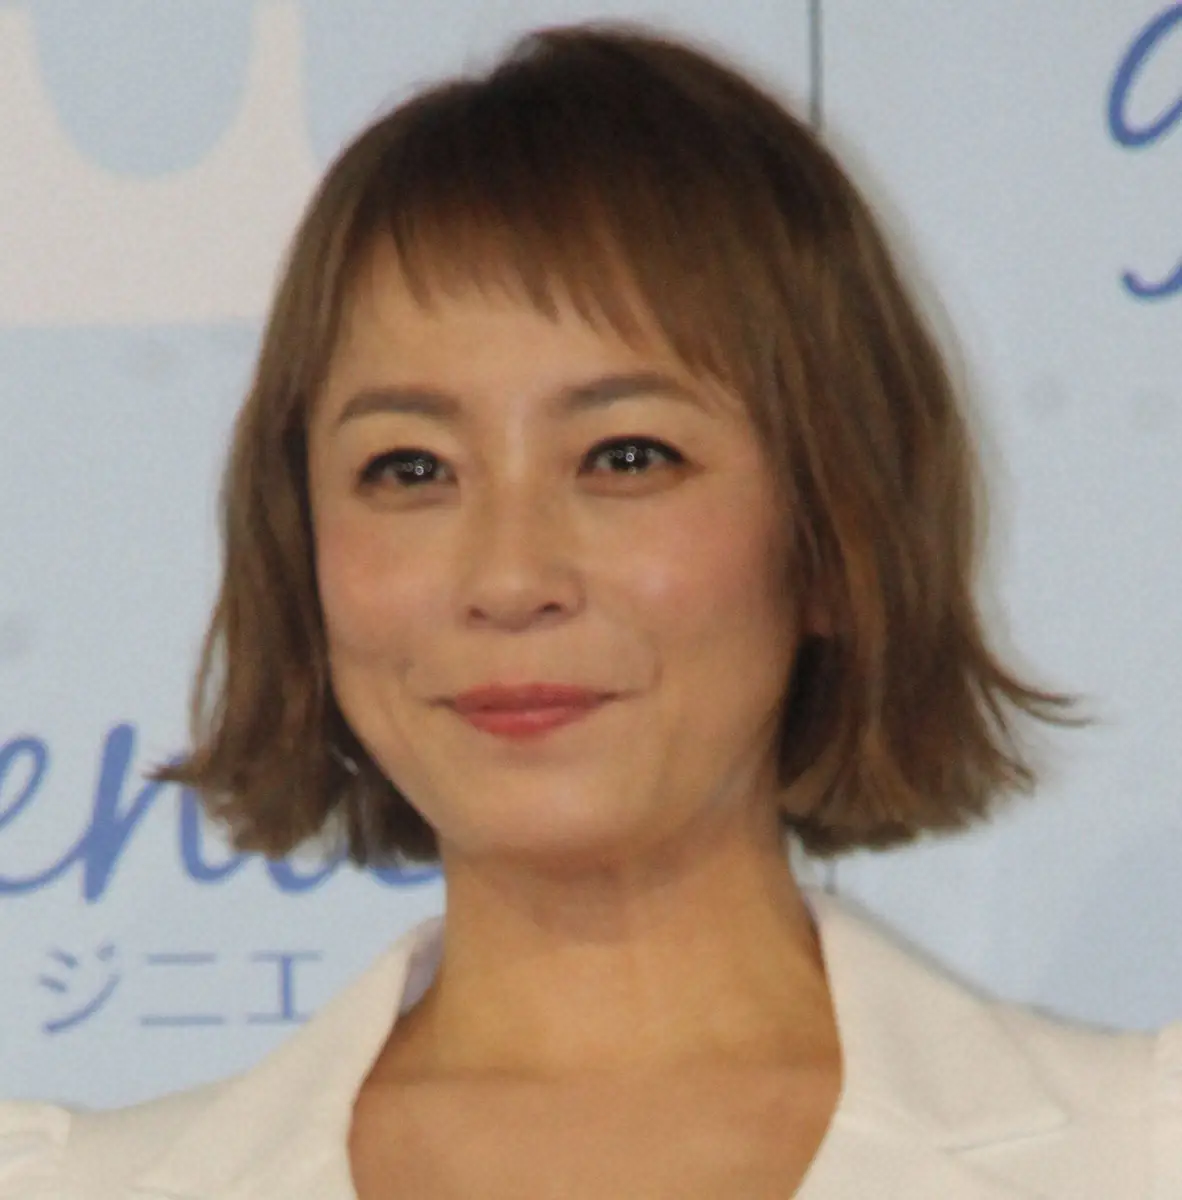 佐藤仁美　憧れの人気俳優とデビュー作で共演も…29年後に知る衝撃事実「目で追ってた」